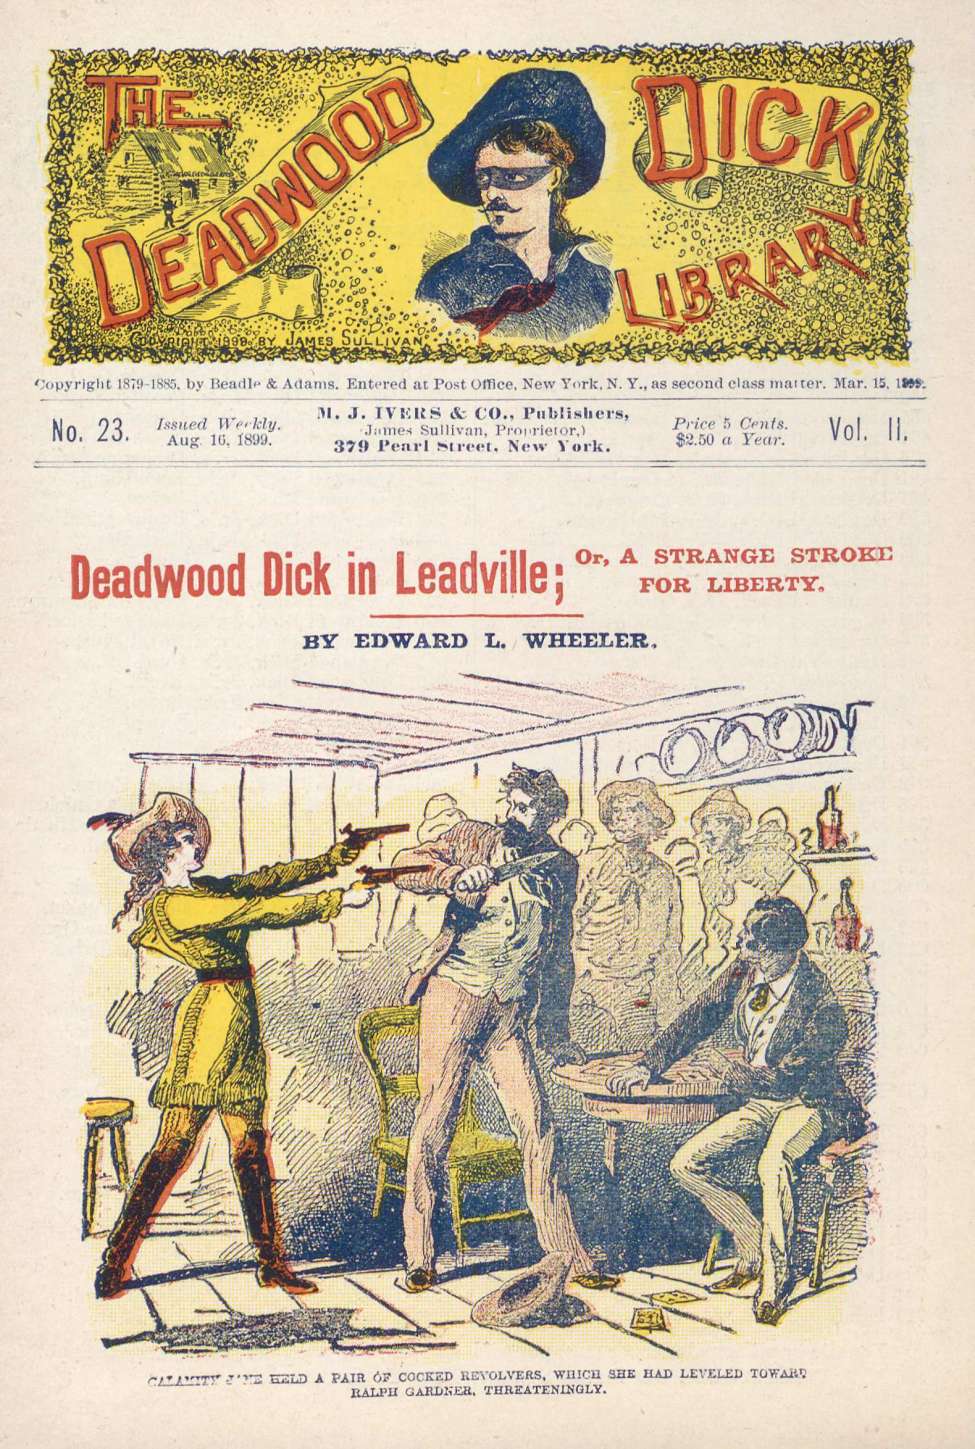 Book Cover For Deadwood Dick Library v2 23 - Deadwood Dick in Leadville